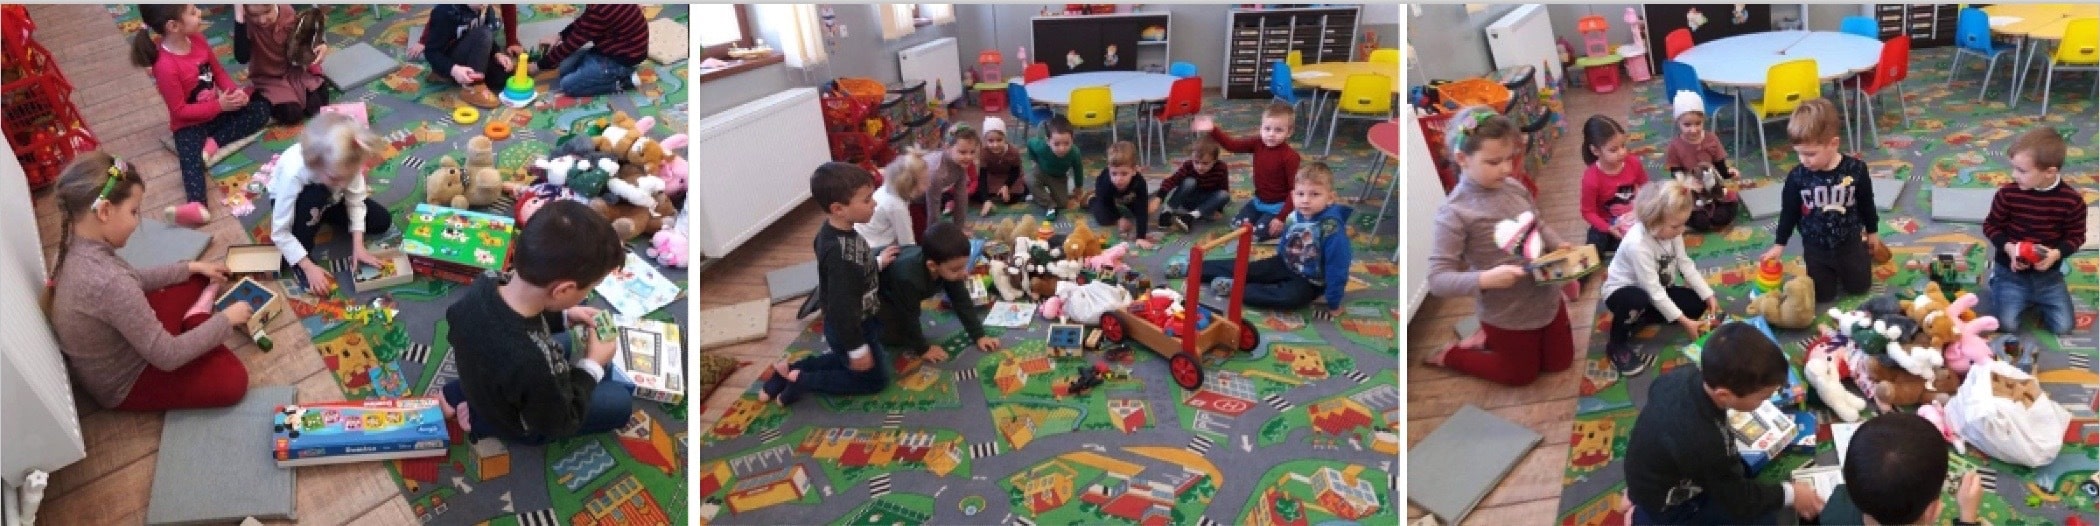 varna-speelgoed-verdeling-basisschool-hulp-oost-europa-SMHO